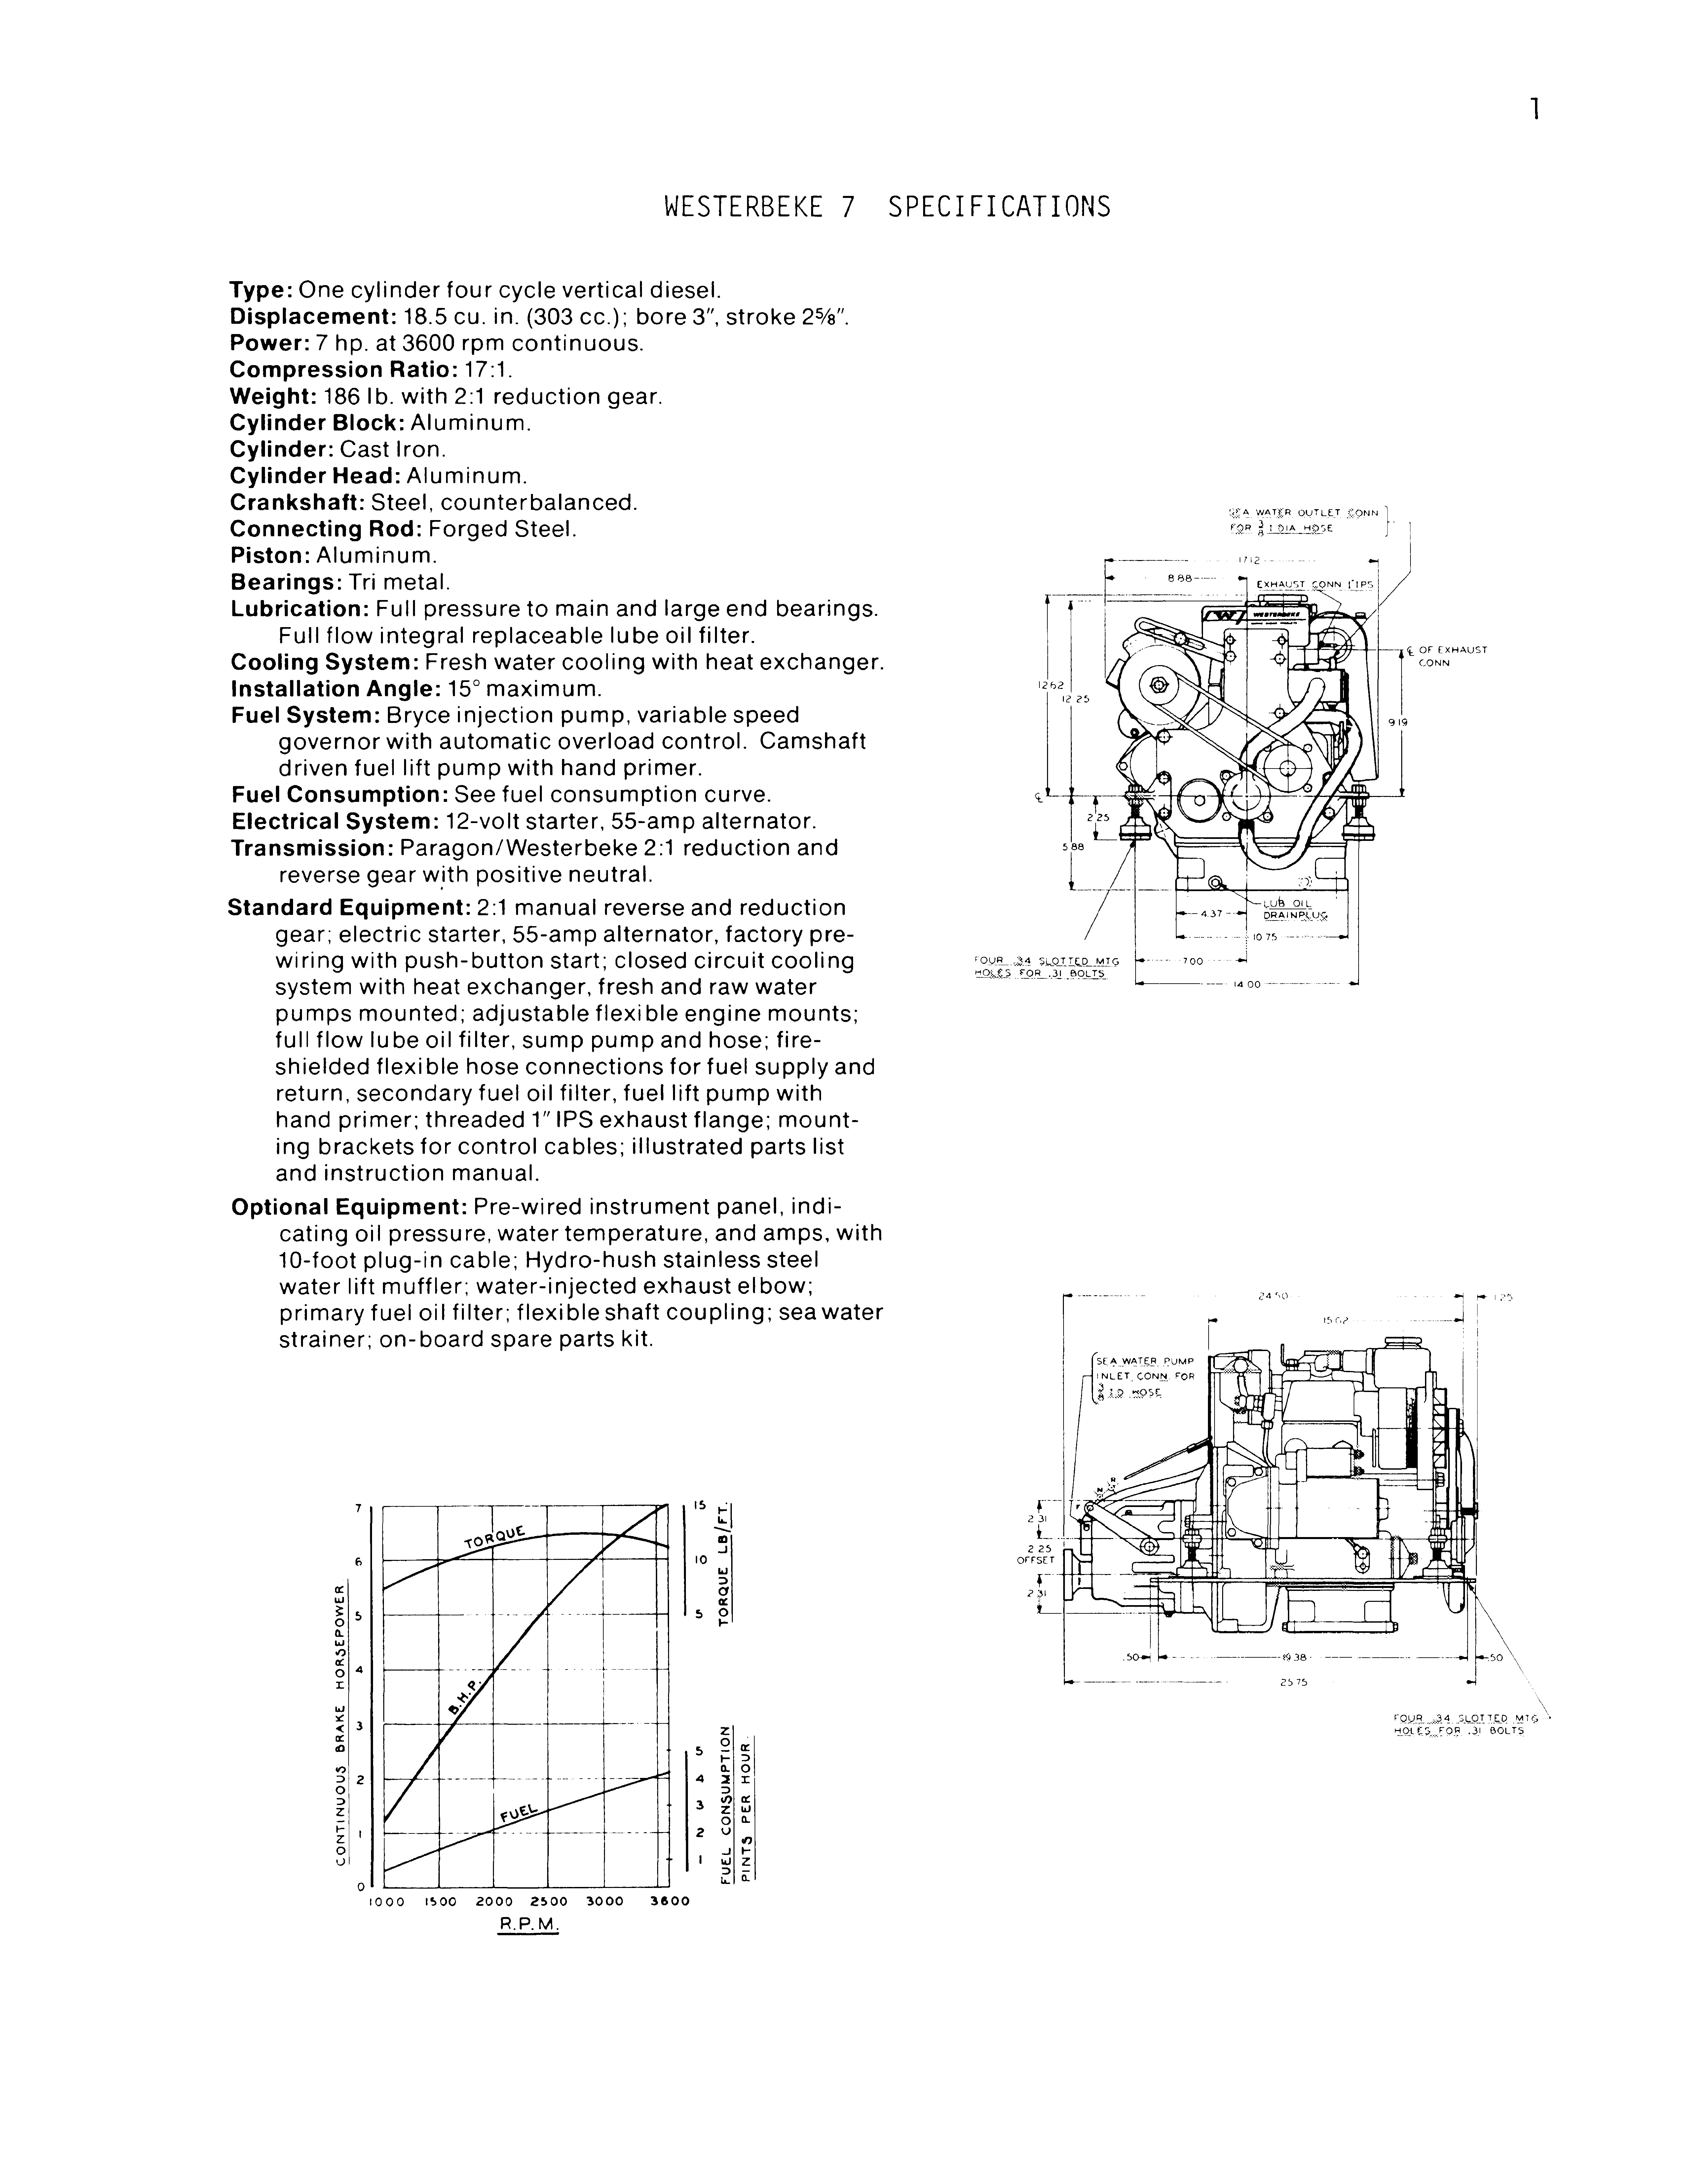 Marine Diesel Engine Cooling System Diagram Technical Manual Marine Diesel Engines Westerbeke Wpd3 Wpd4 Of Marine Diesel Engine Cooling System Diagram